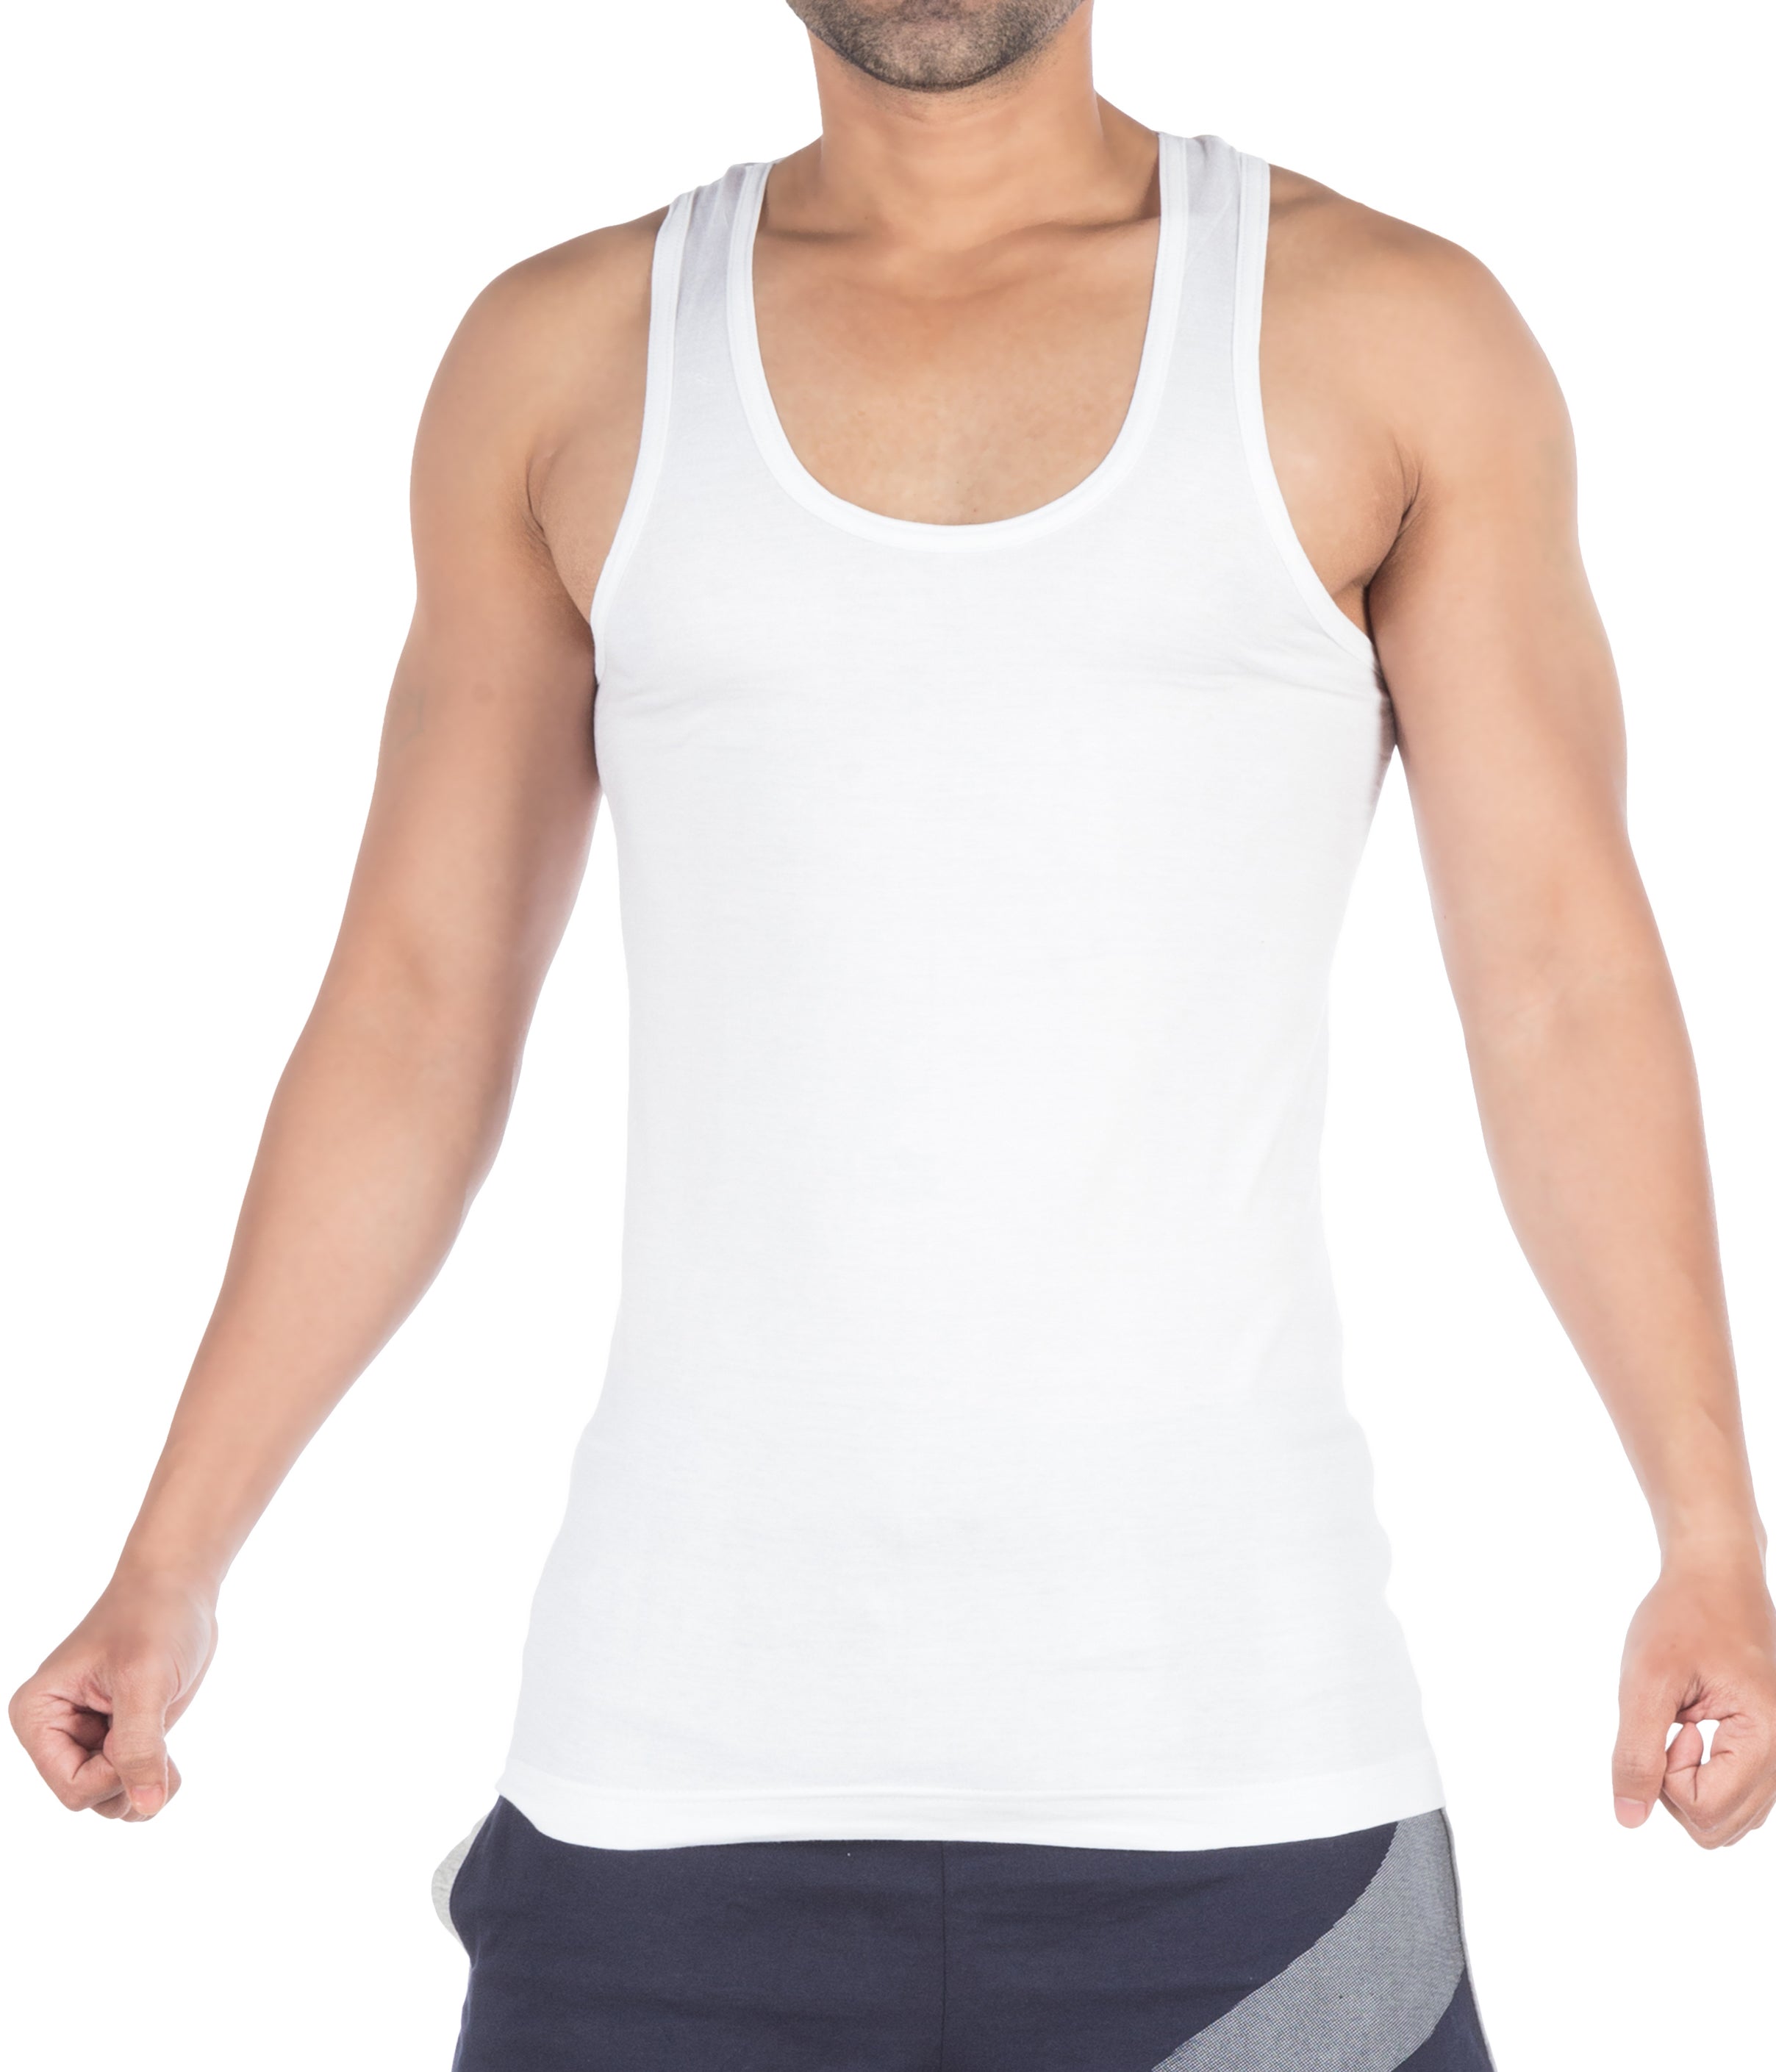 Buy VIP Supreme Men's Sleeveless Cotton Vest 85 CM (Pack of 5